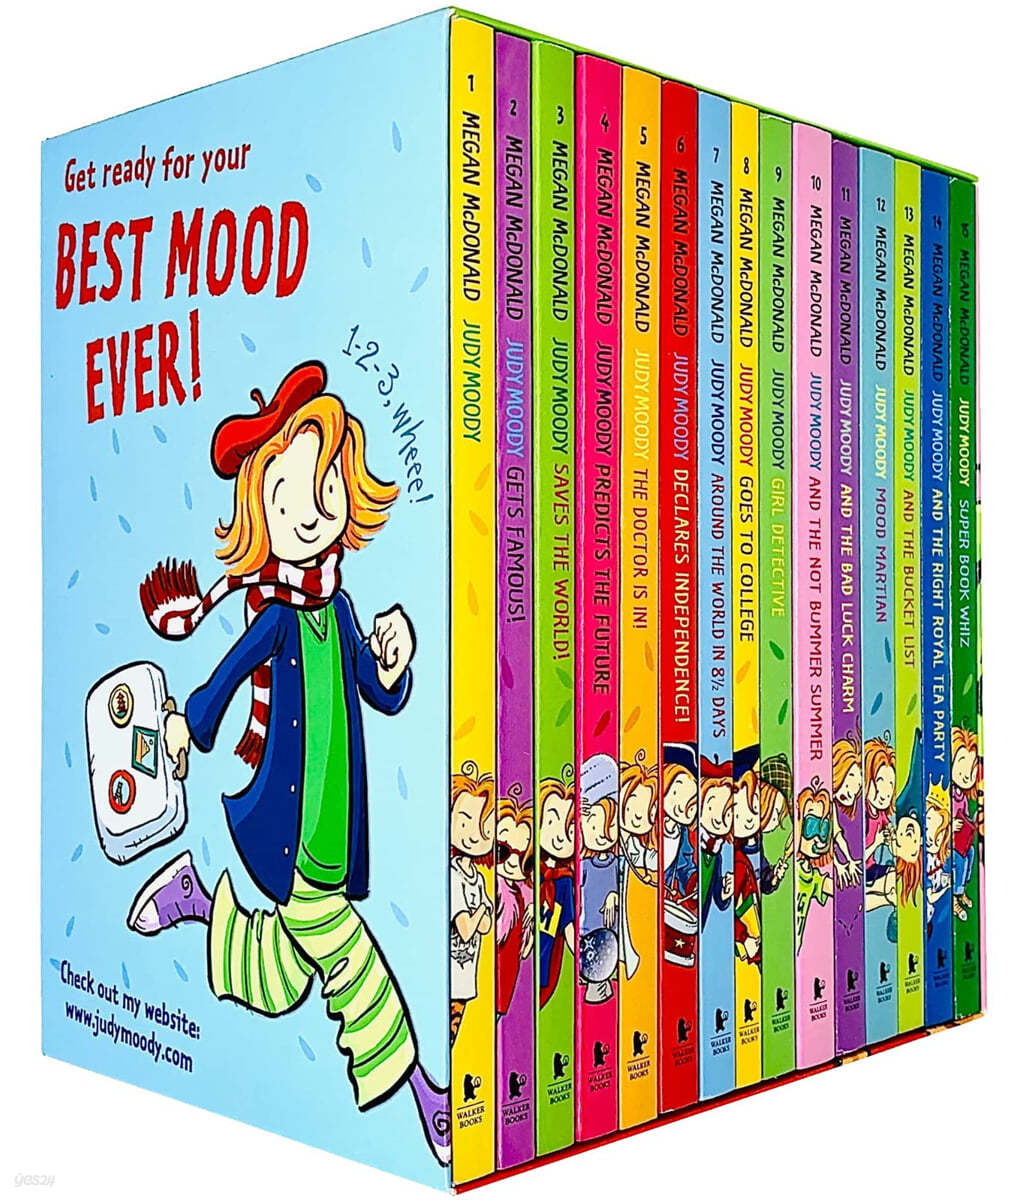 주디 무디 원서 15종 박스 세트 : Judy Moody 15 Books Collection Box Set